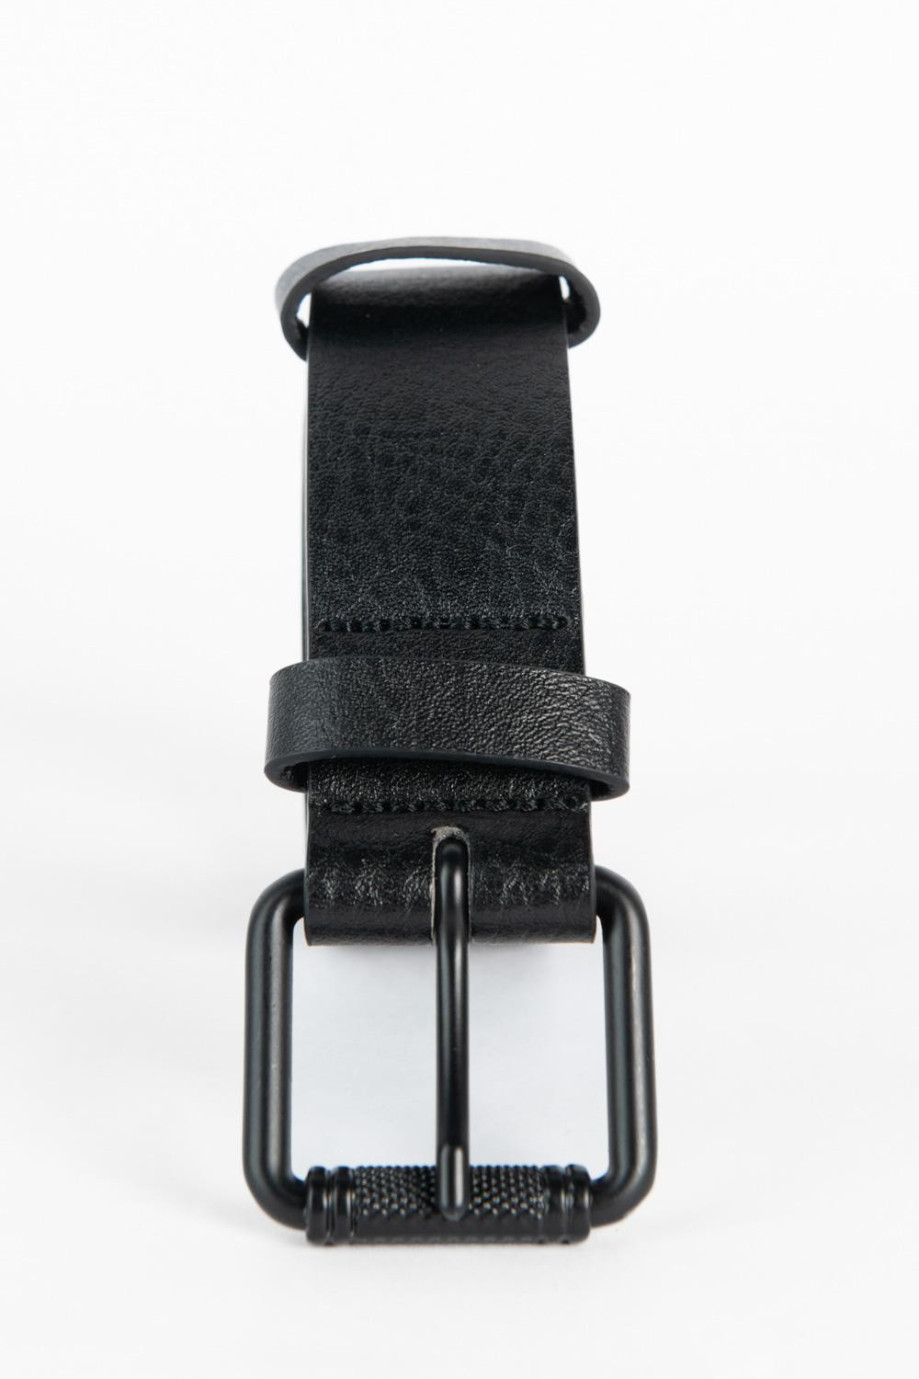 Cinturón negro con hebilla metálica y doble trabilla